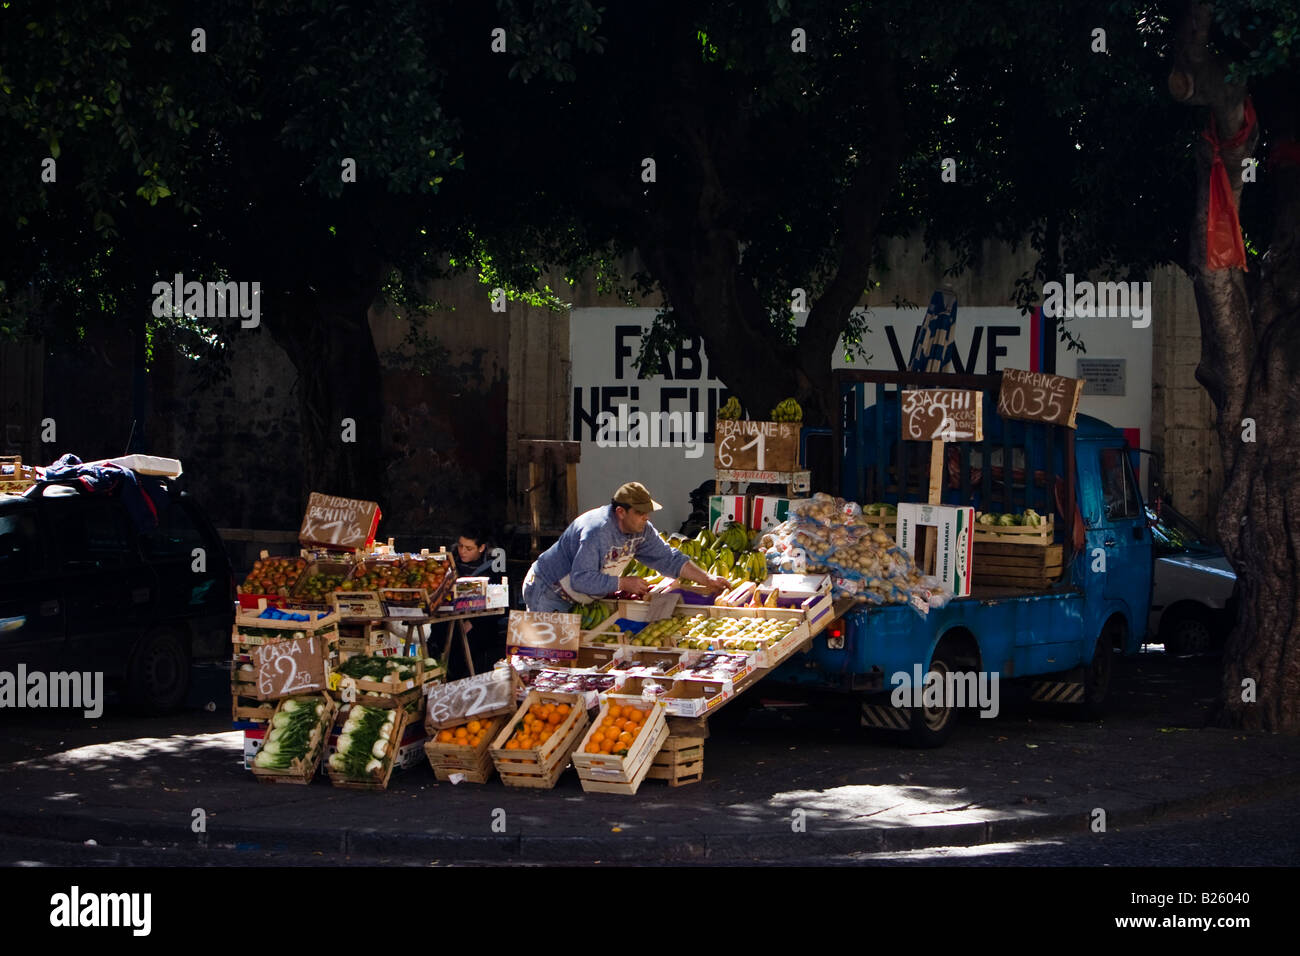 Obst Anbieter entladen frisches Obst vom LKW am Markt Catania, Sizilien, Italien Stockfoto